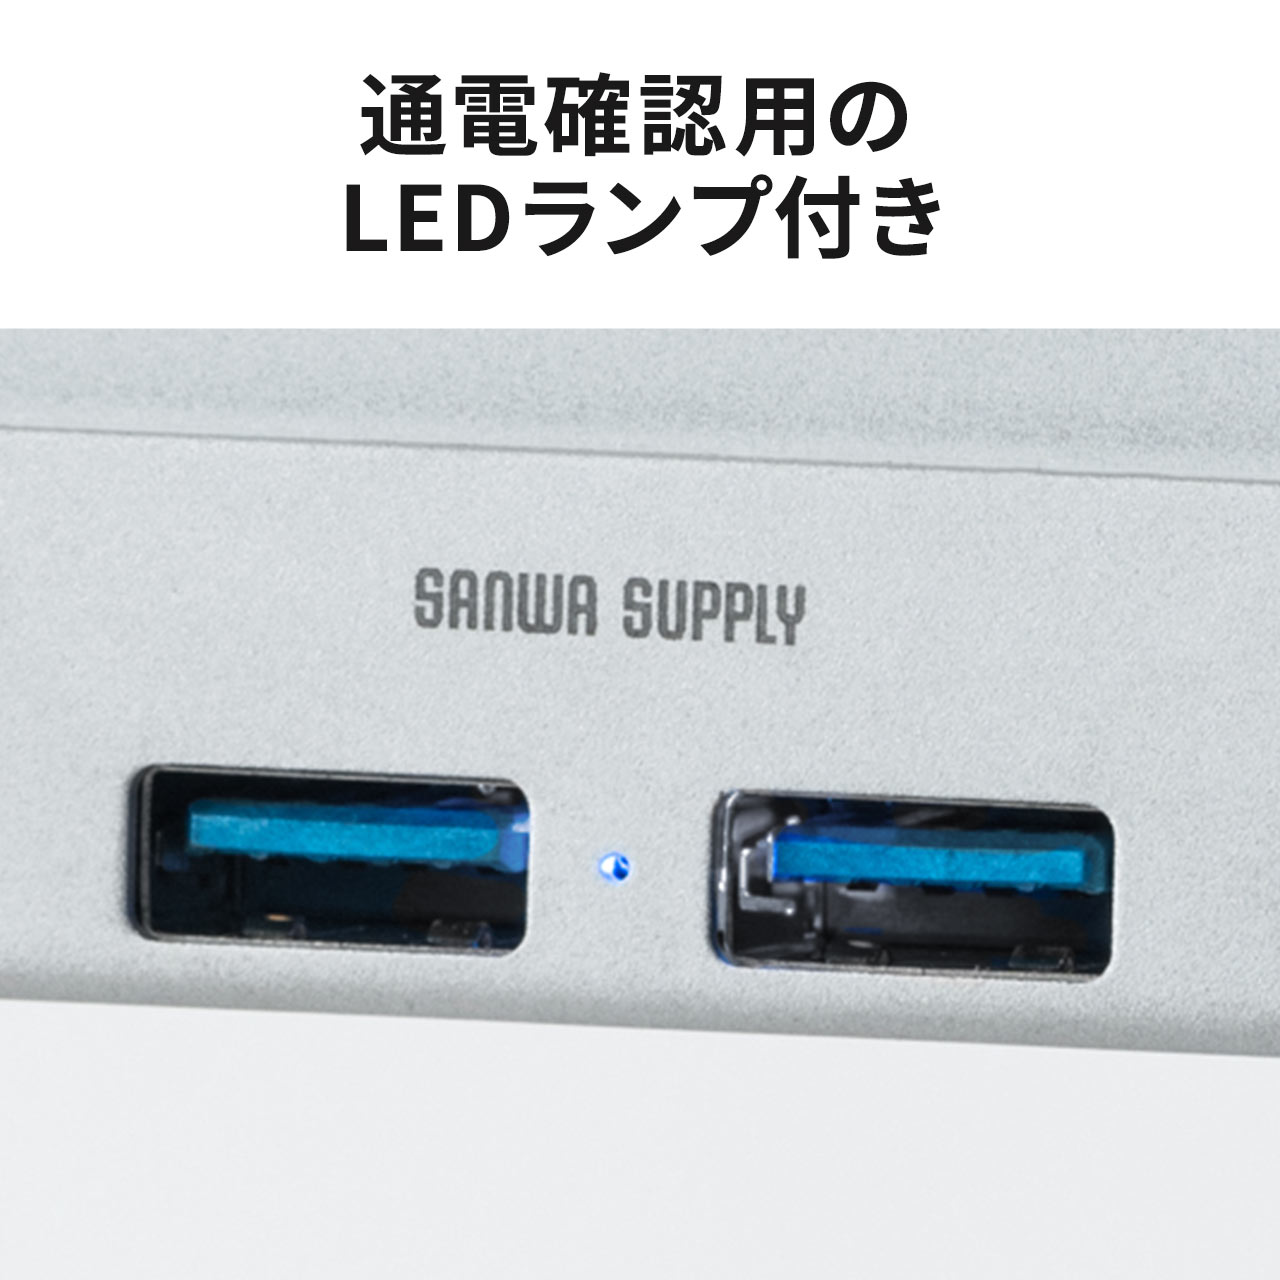 【ビジネス応援セール】クランプ式USBハブ クランプ式・USB3.1 Gen1 4ポート バスパワー ケーブル長1.5m シルバー 400-HUB065S